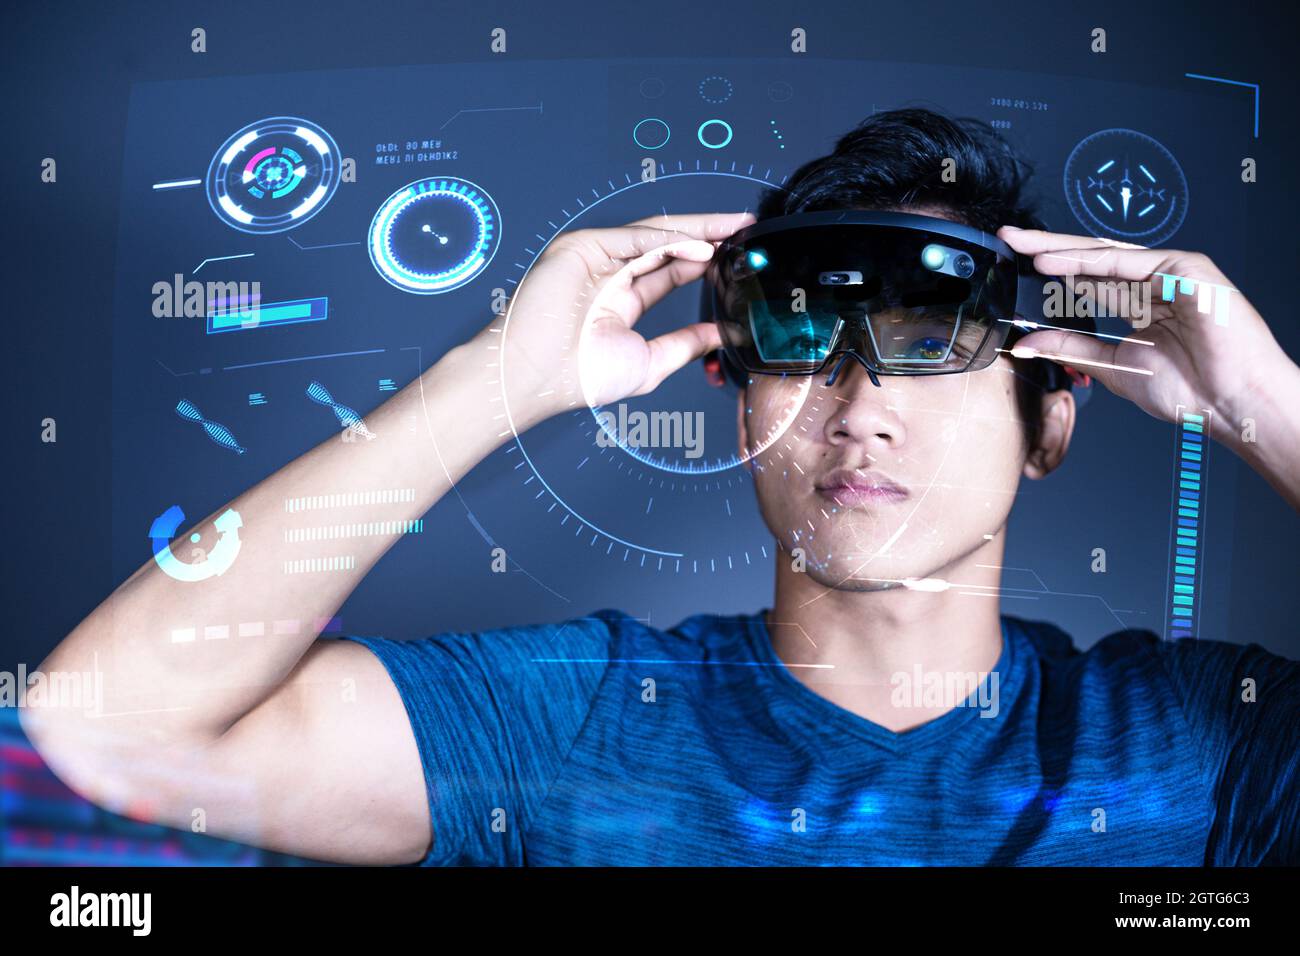 Junger Mann Aus Asien Mit Mixed-Reality-Brille Erlebt Das Hololens-Headset  Mit Fortschrittlicher Technologie Stockfotografie - Alamy